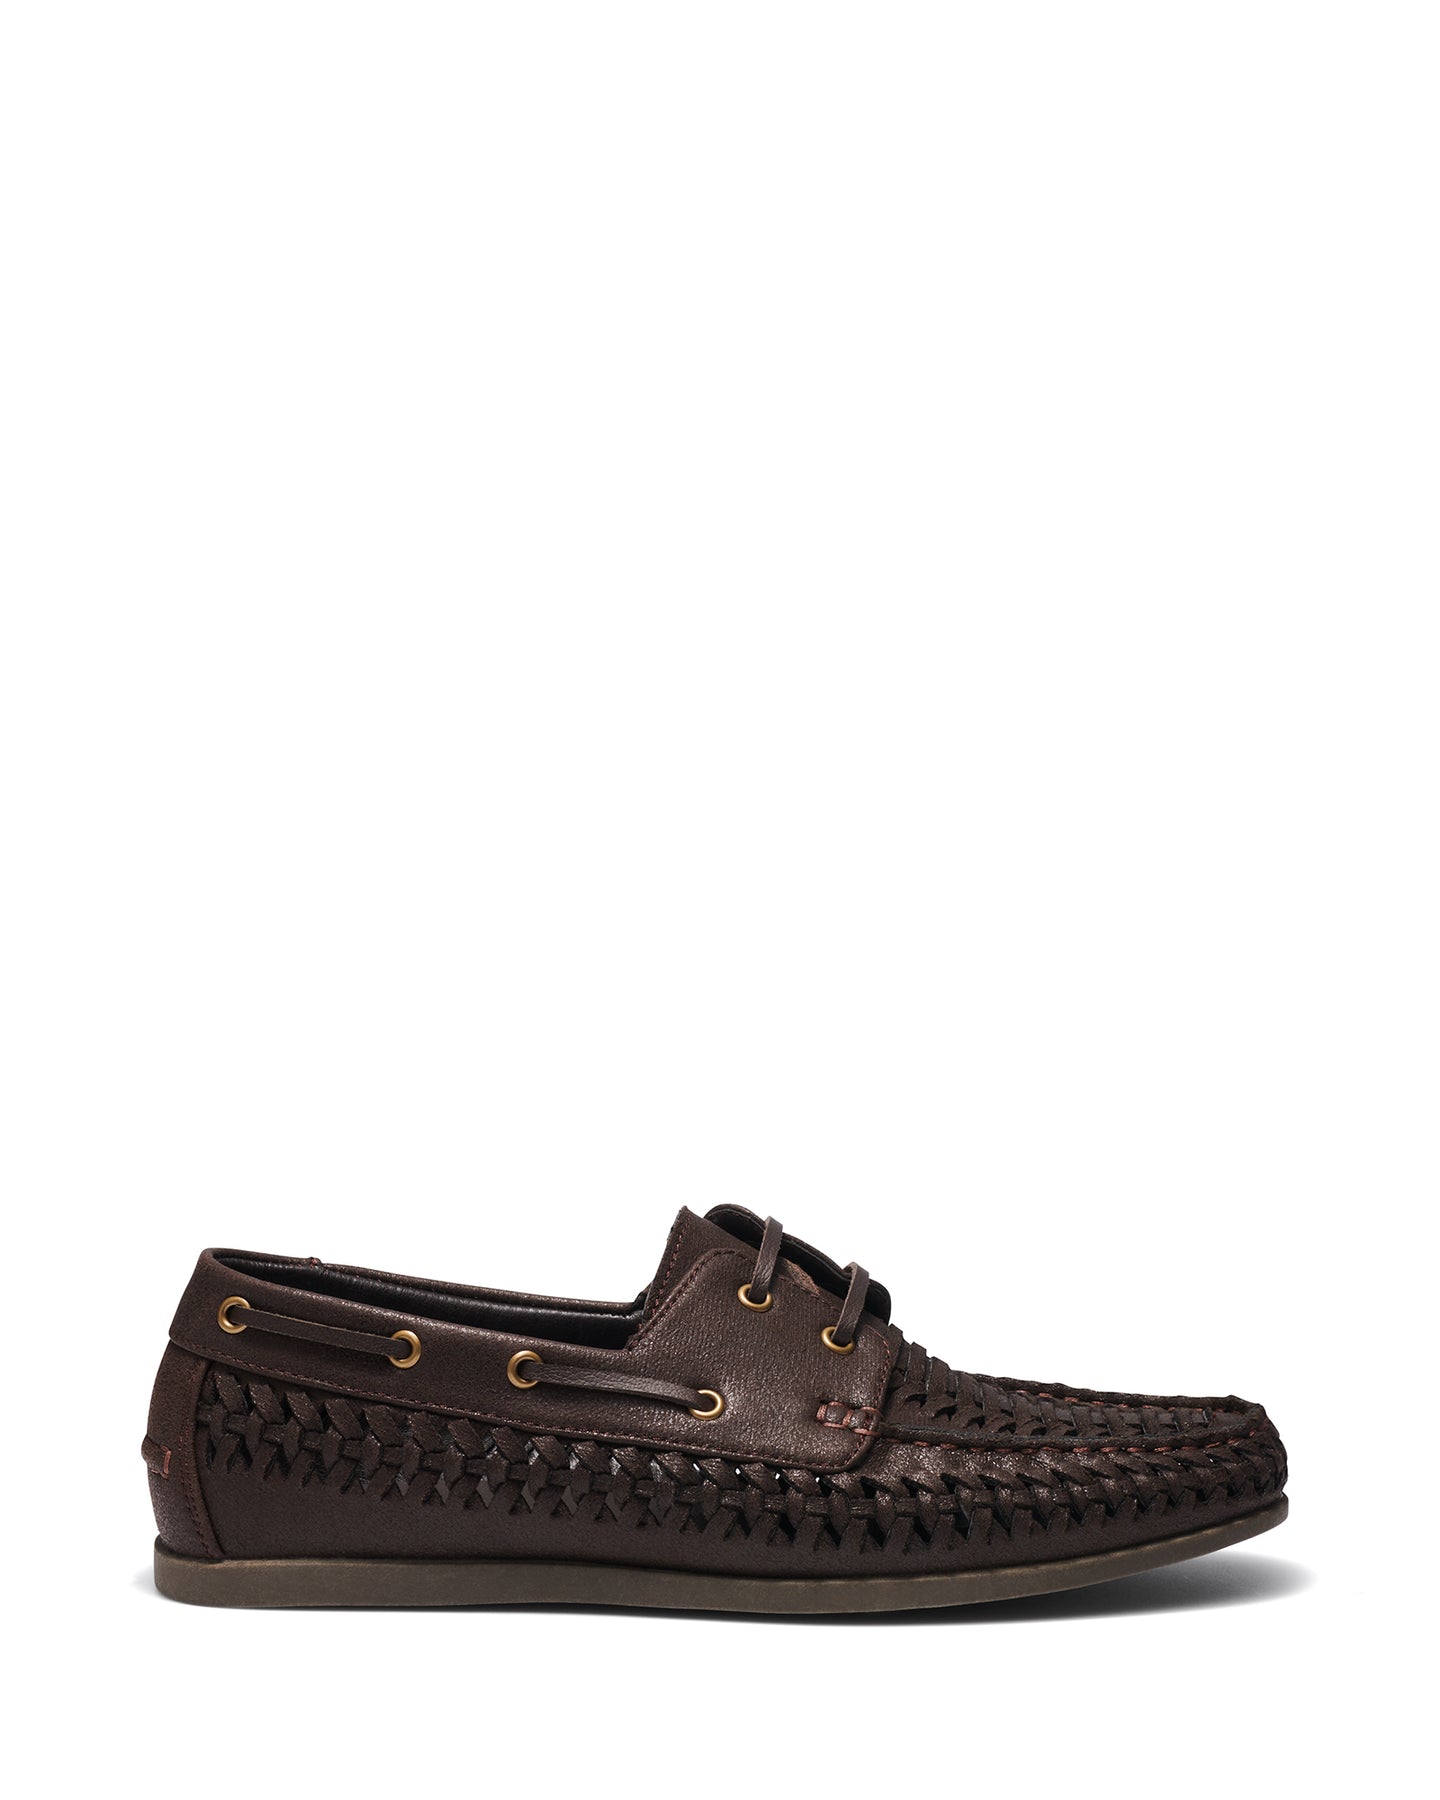 Uncut Shoes Perez Chocolate | Men's Huarache | Boat Shoe | Lace Up